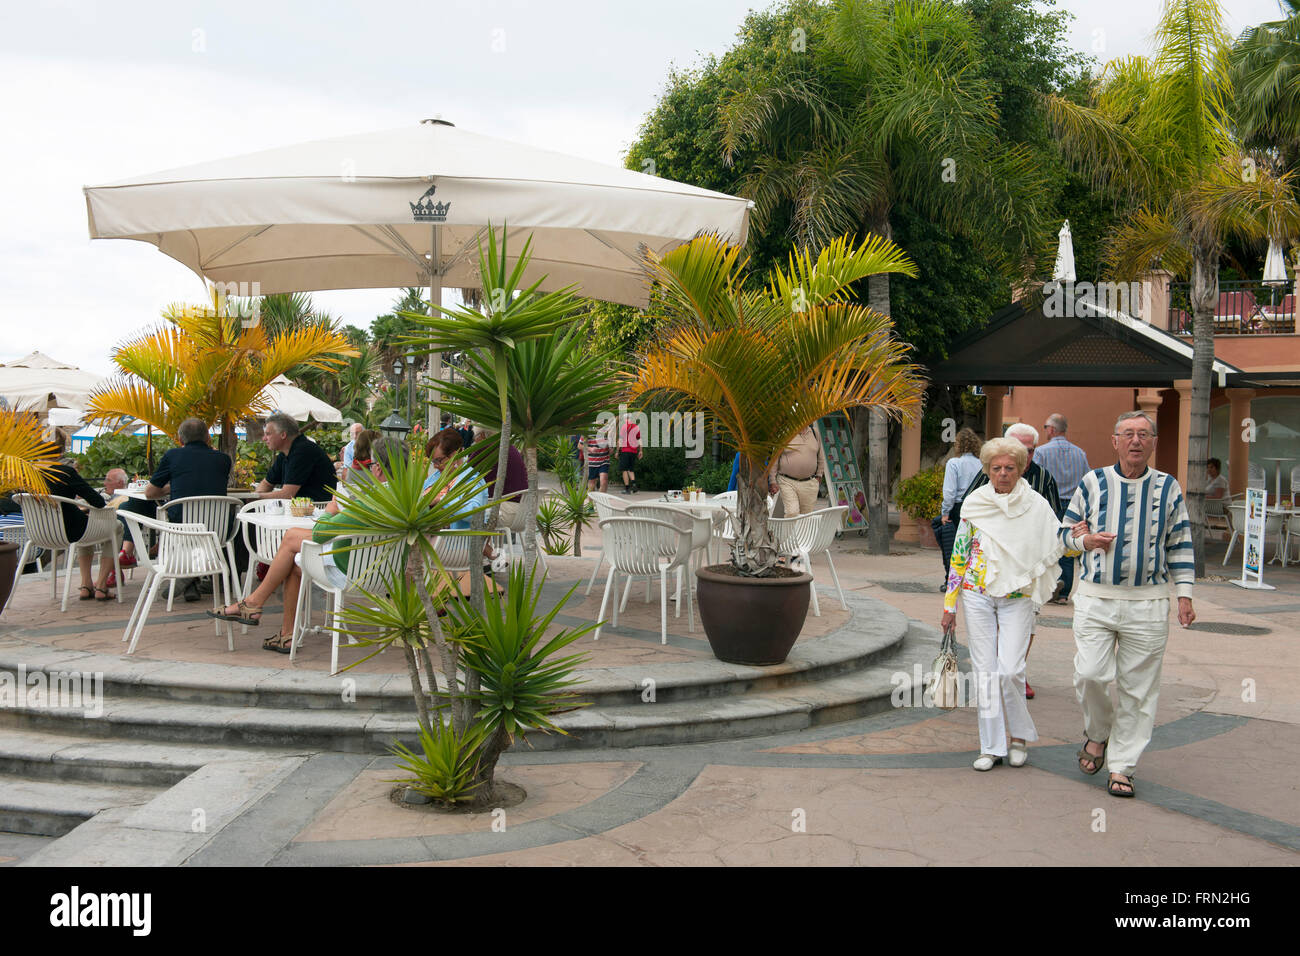 Spanien, Teneriffa, Adeje, Playa el Duque, Cafe auf der Strandpromenade Stock Photo